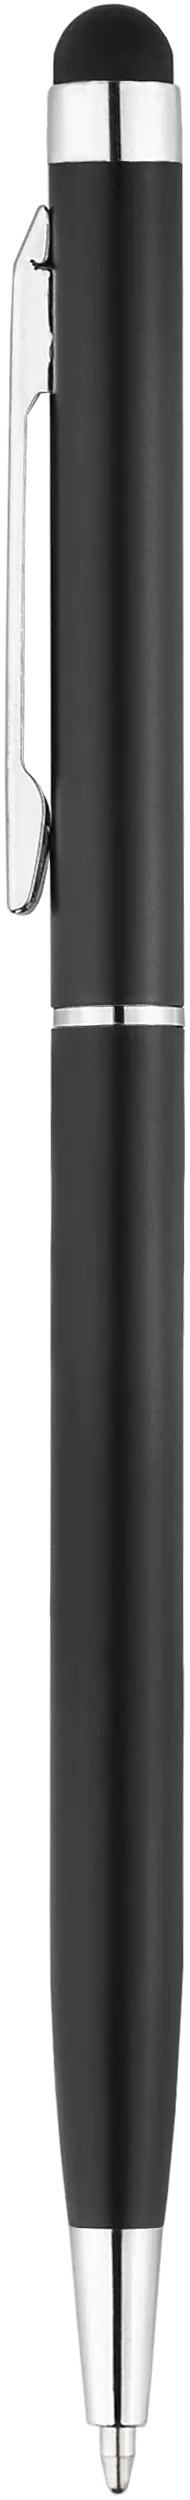 Ручка KENO NEW (Акция! 34.90 руб. от 300шт.) Черная 1117-08